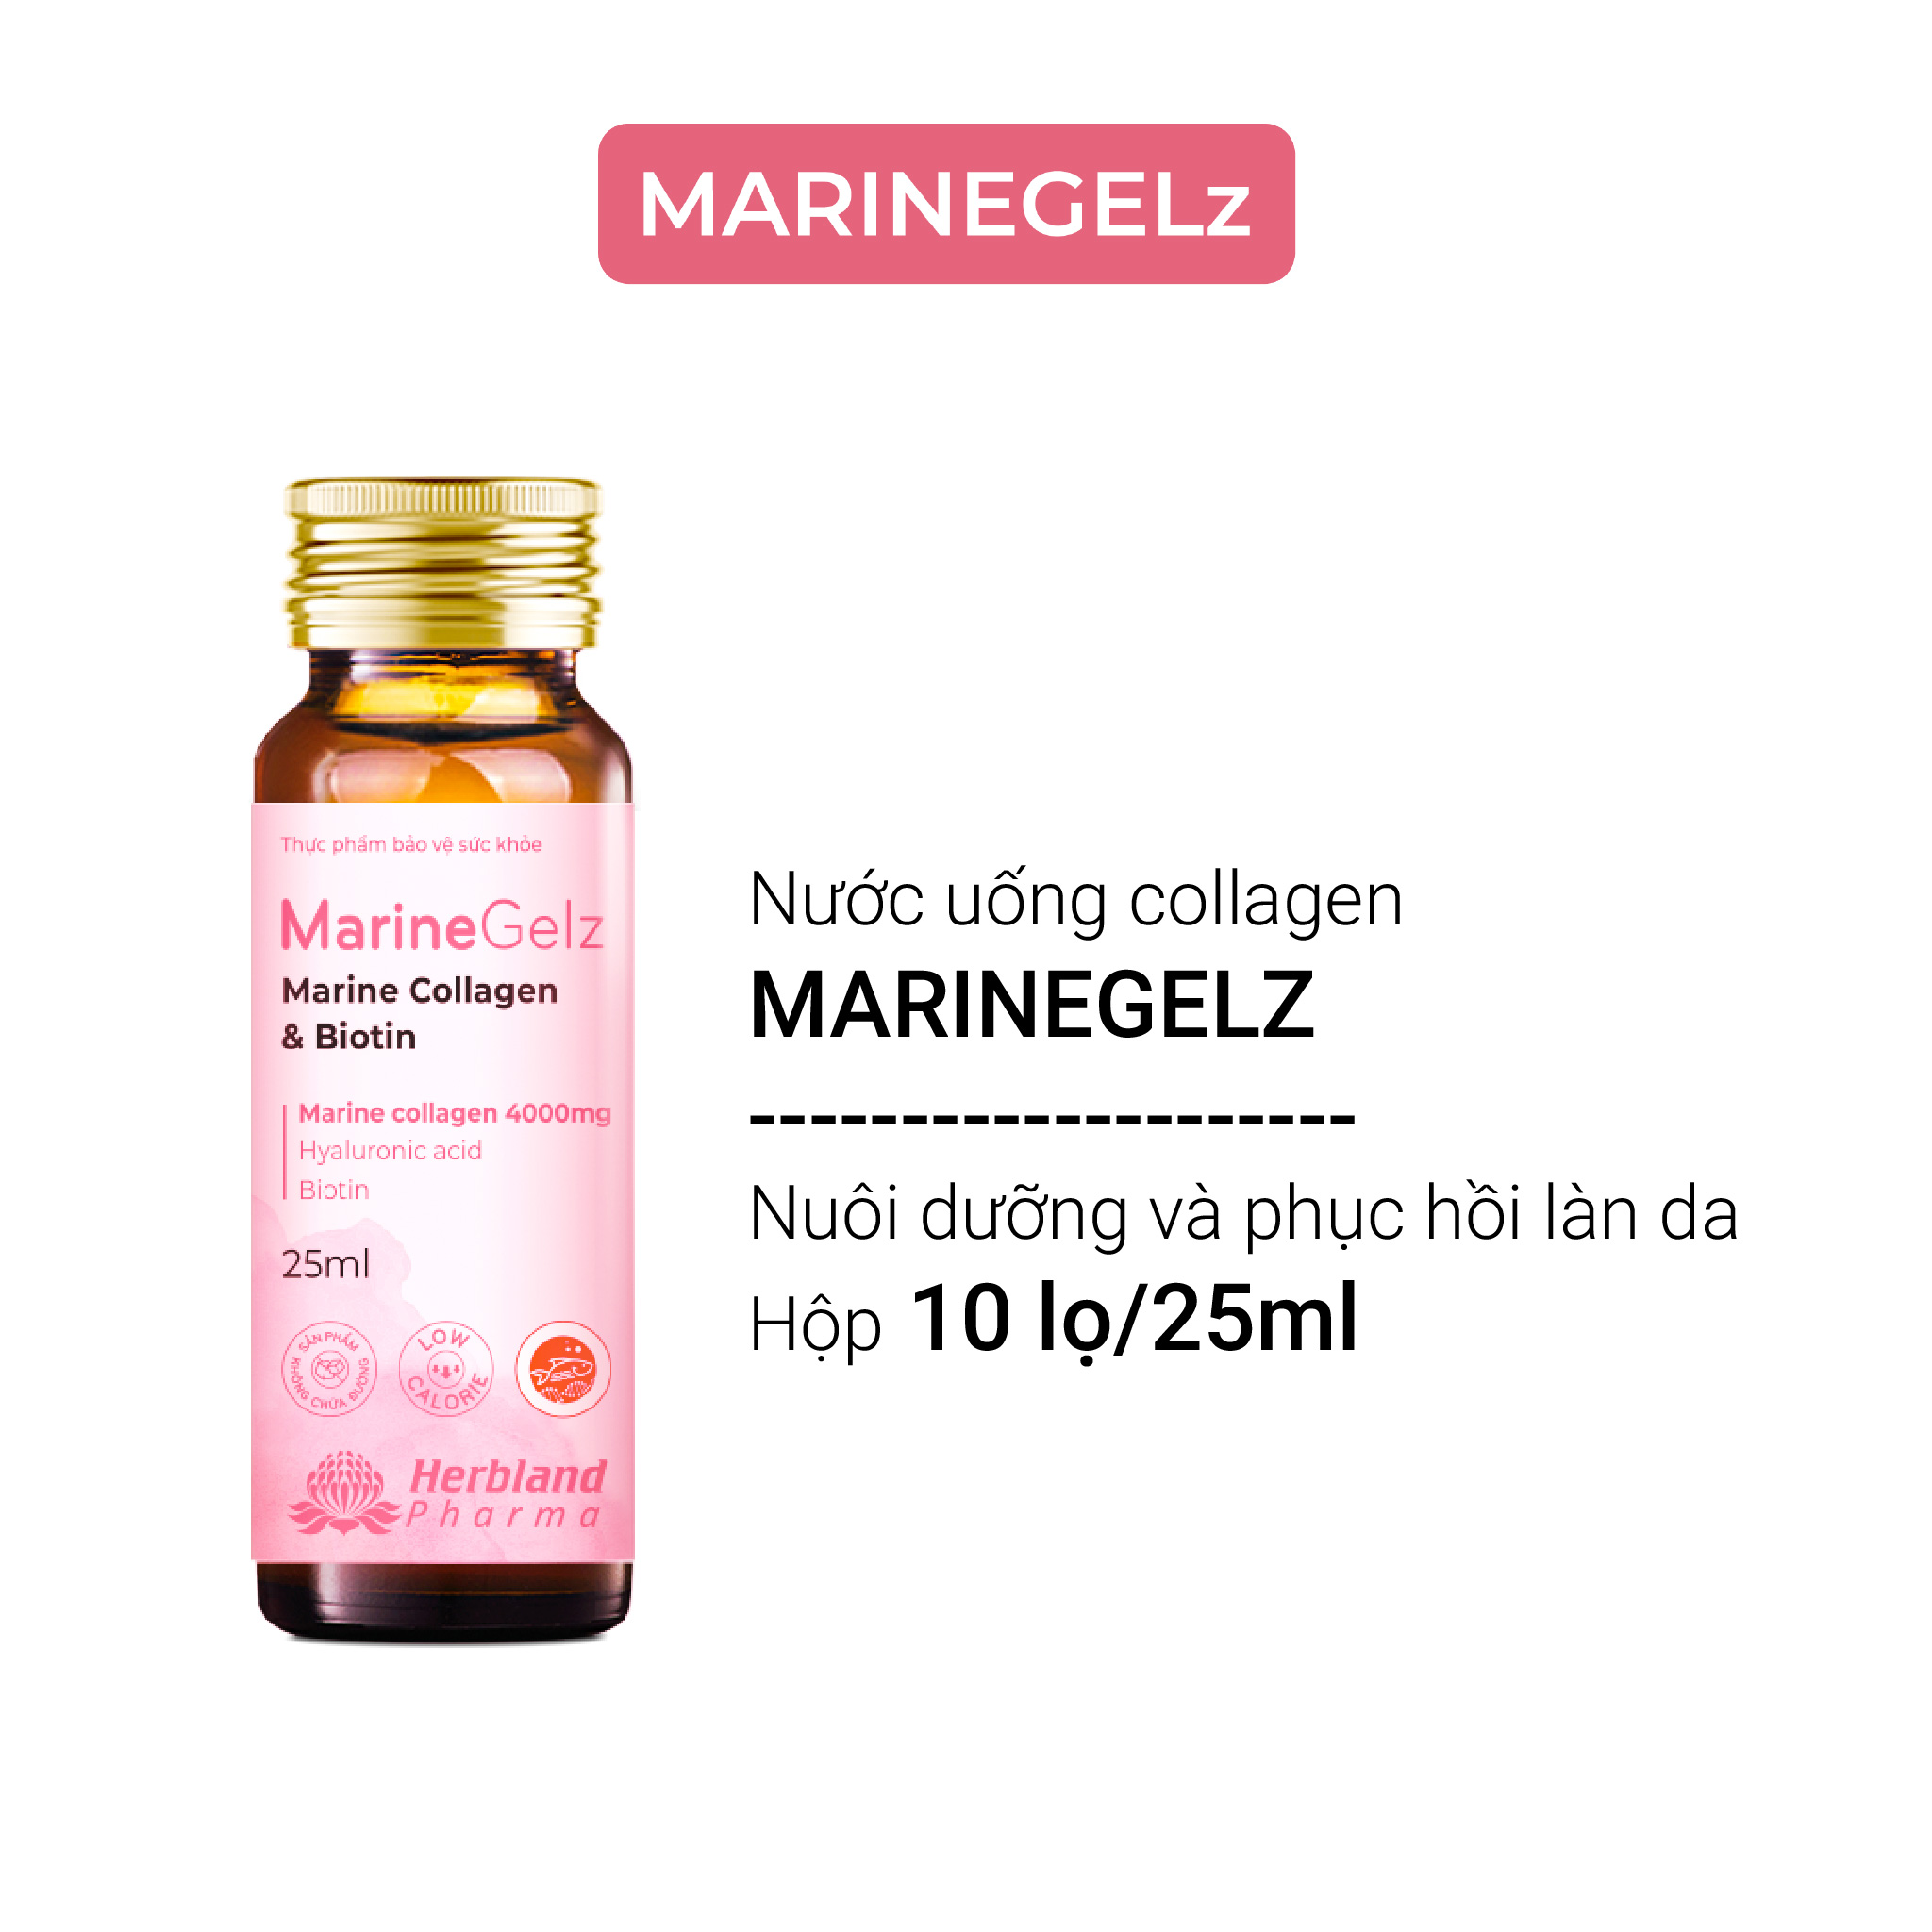 Nước uống Collagen MarineGelz 4000mg ngăn ngừa lão hóa, trẻ hóa làn da - (10 lọ x 25ml)